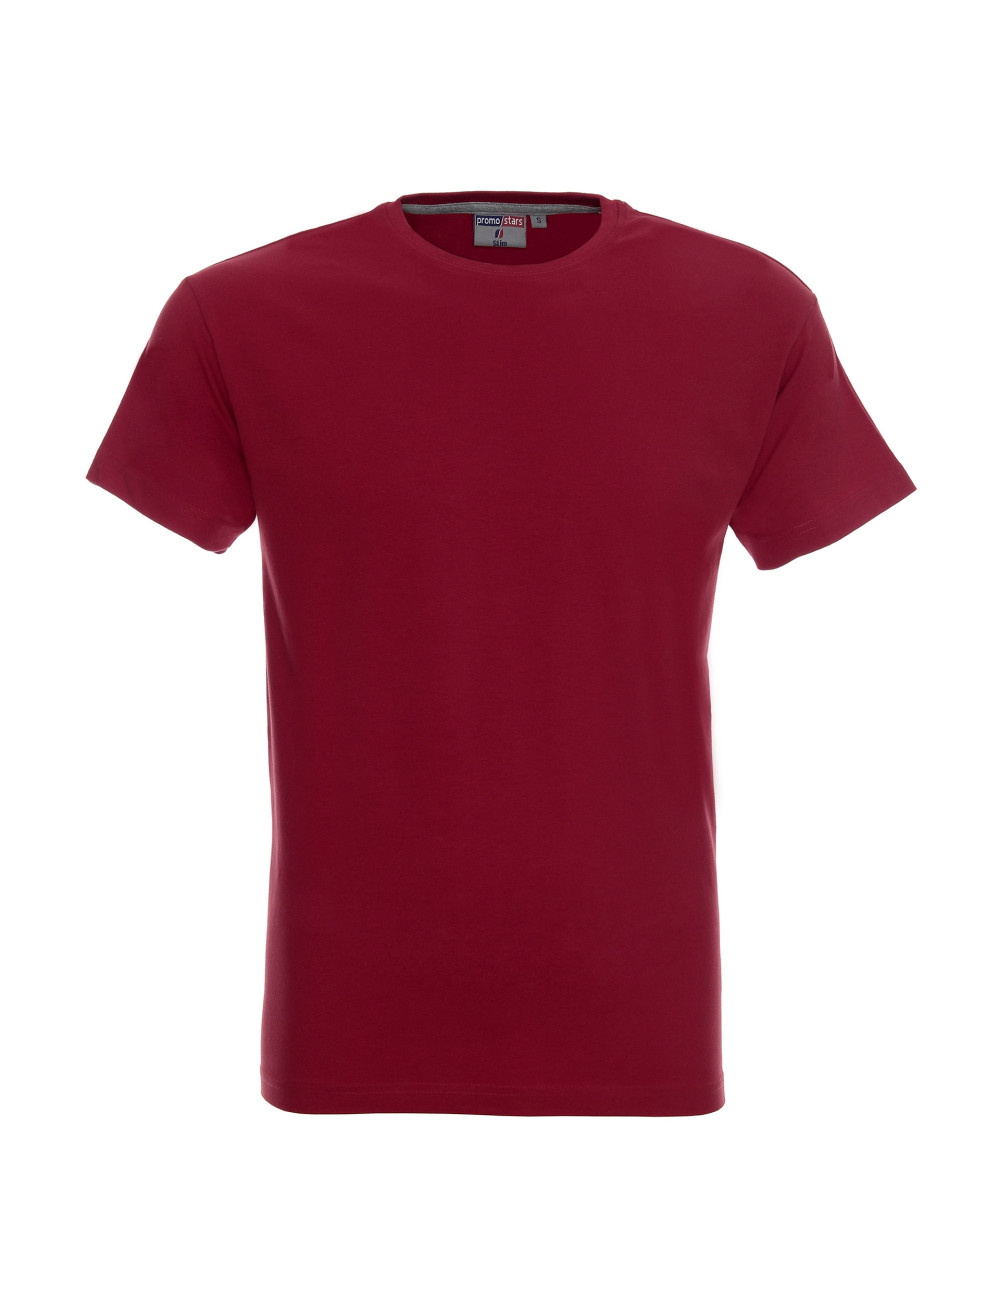 Schmales Herren-T-Shirt, kastanienbrauner Crimson Cut